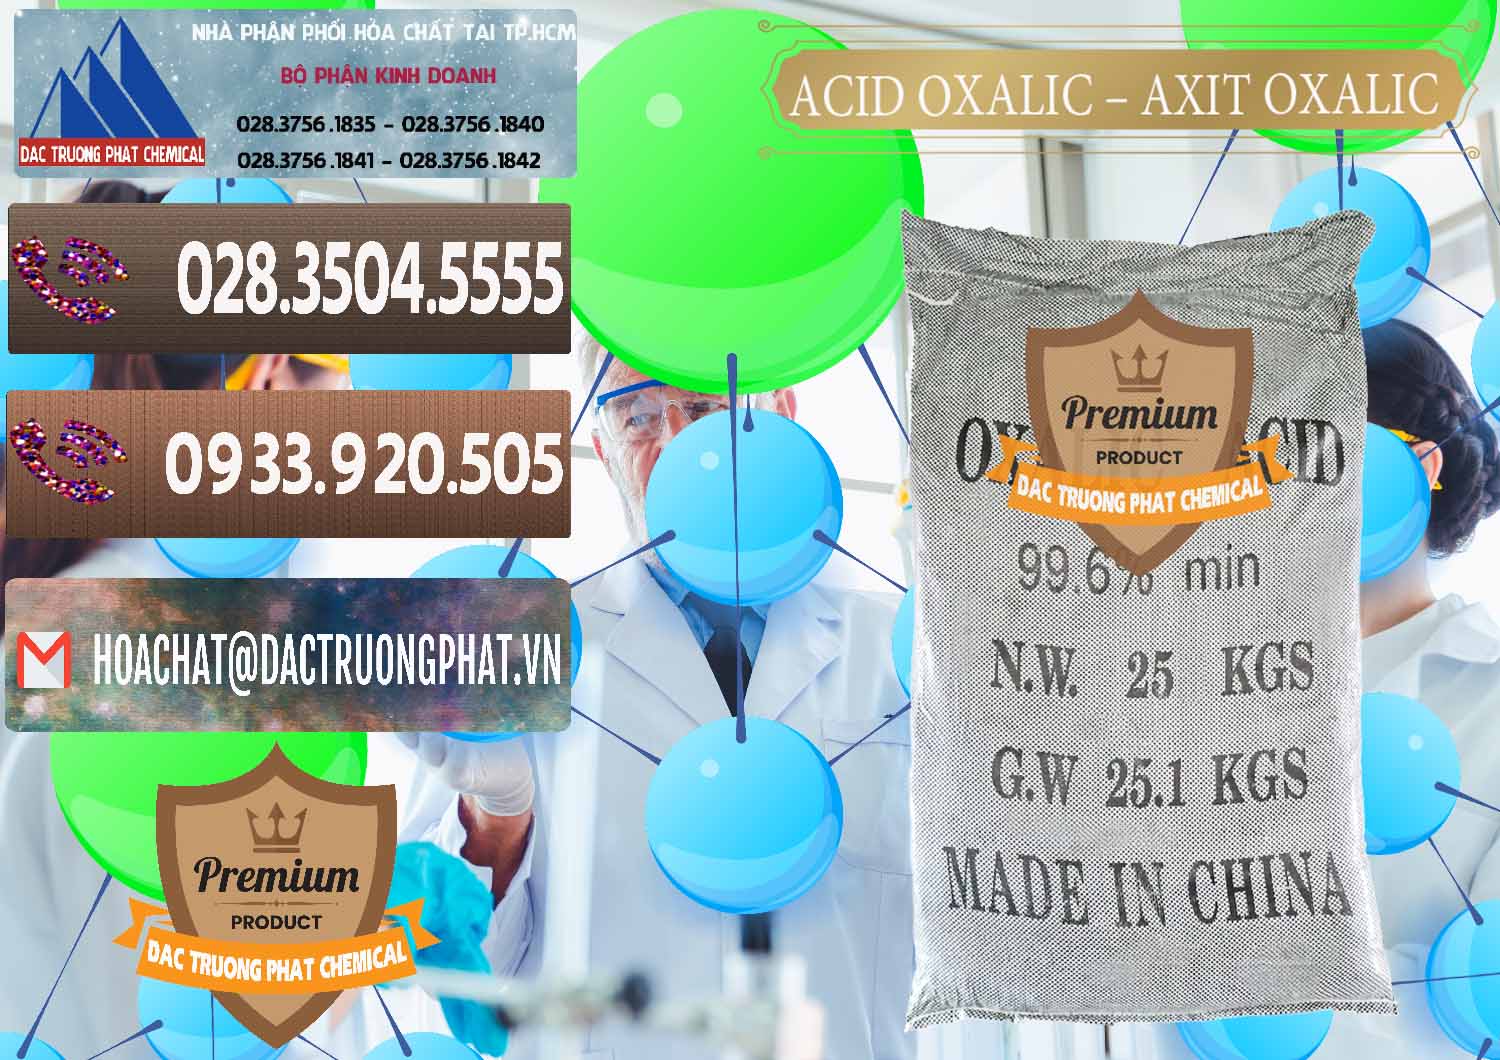 Nơi cung ứng & bán Acid Oxalic – Axit Oxalic 99.6% Trung Quốc China - 0014 - Công ty chuyên cung cấp _ nhập khẩu hóa chất tại TP.HCM - hoachatviet.net